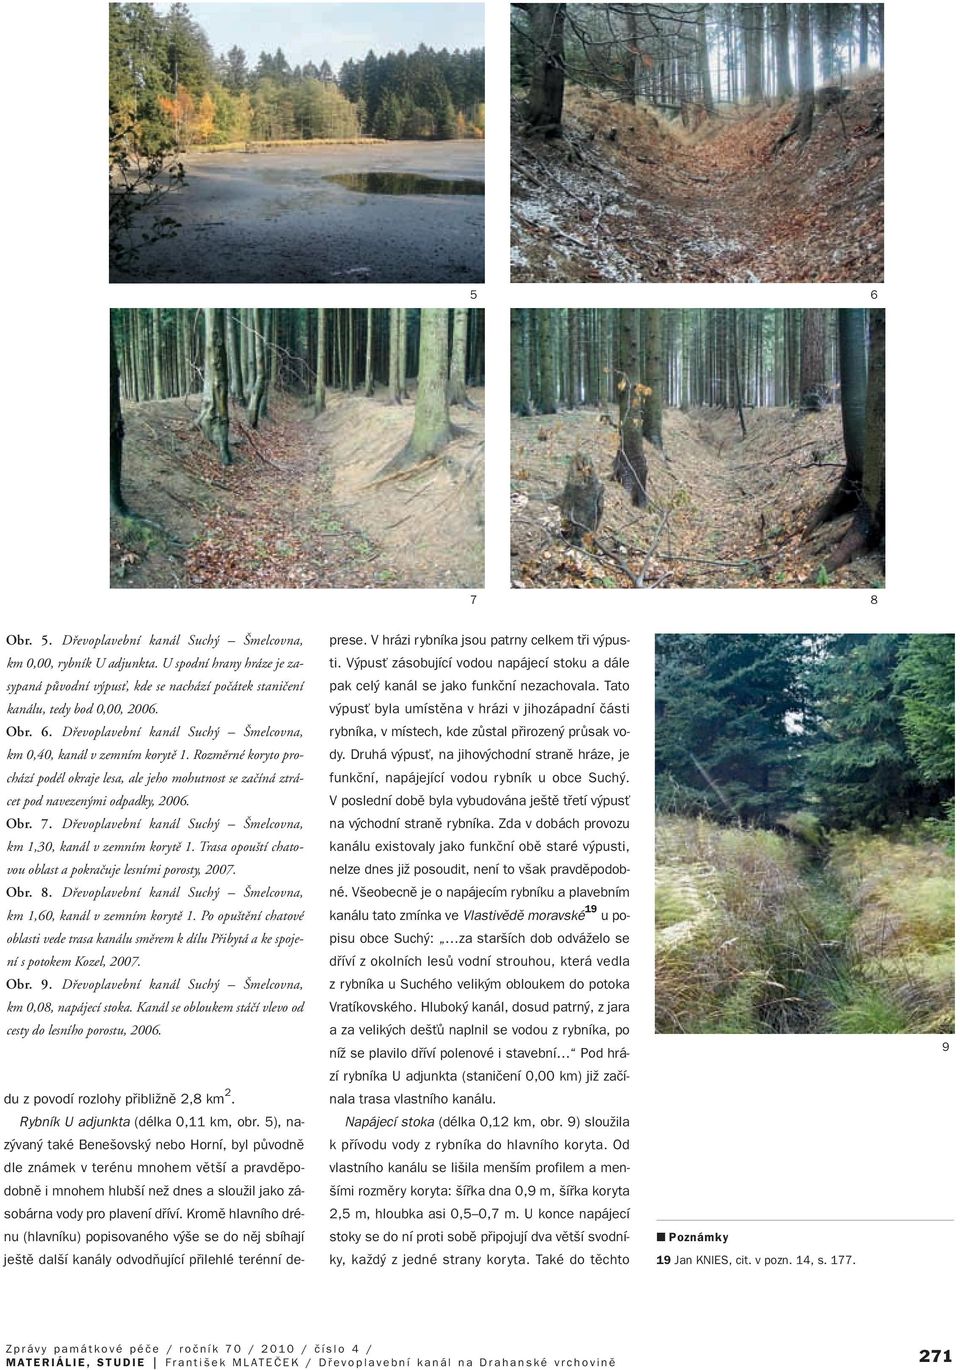 Trasa opou tí chatovou oblast a pokraãuje lesními porosty, 2007. Obr. 8. Dfievoplavební kanál Such melcovna, km 1,60, kanál v zemním korytû 1.